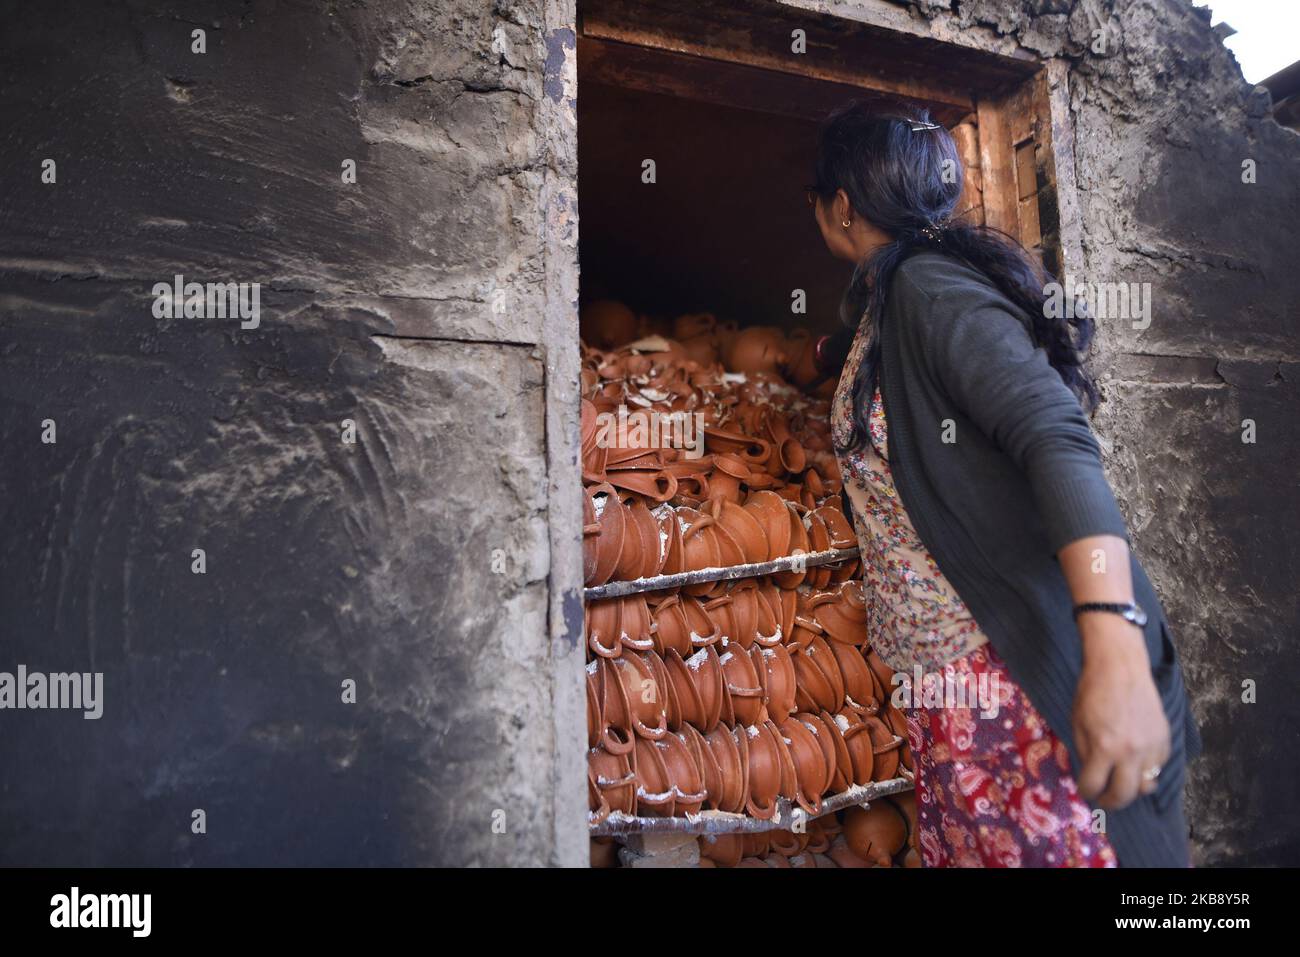 Eine Frau, die am Dienstag, den 22. Oktober 2019, Tontopf-Lampen aus dem Brennplatz für das bevorstehende Tihar- oder Deepawali-Festival auf seinem Workshop auf dem Pottery Square, Bhaktapur, Nepal, herausnimmt. Nepalese Potter arbeitet an ihrer traditionellen Töpferei in kleinem Maßstab in Bhaktapur, Nepal. Bhaktapur ist eine alte Stadt im Kathmandu Valley und wird aufgrund seiner reichen Kultur, Tempel und Holz-, Metall- und Steinkunst von der UNESCO zum Weltkulturerbe erklärt. (Foto von Narayan Maharjan/NurPhoto) Stockfoto